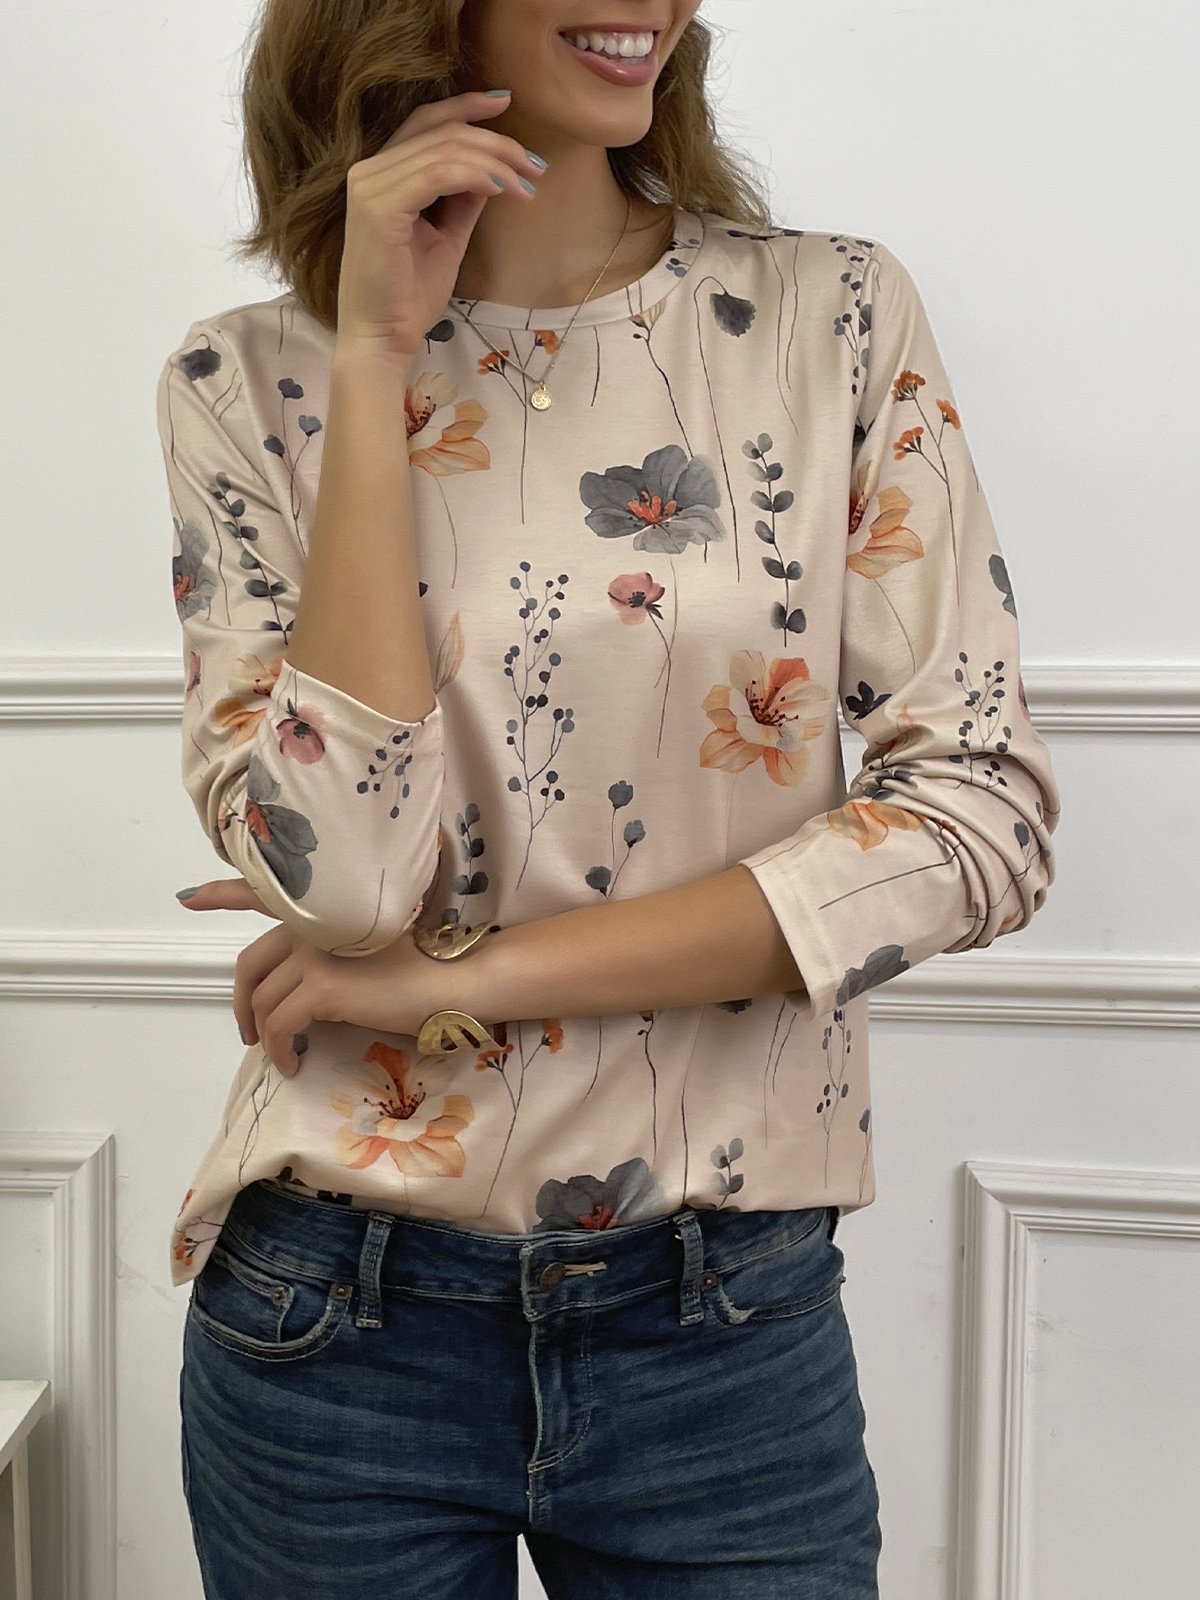 T-shirts Femmes Décontracté Floral Printemps / Automne Tricoté Micro-élasticité Quotidien Ample Manches Longues Régulier